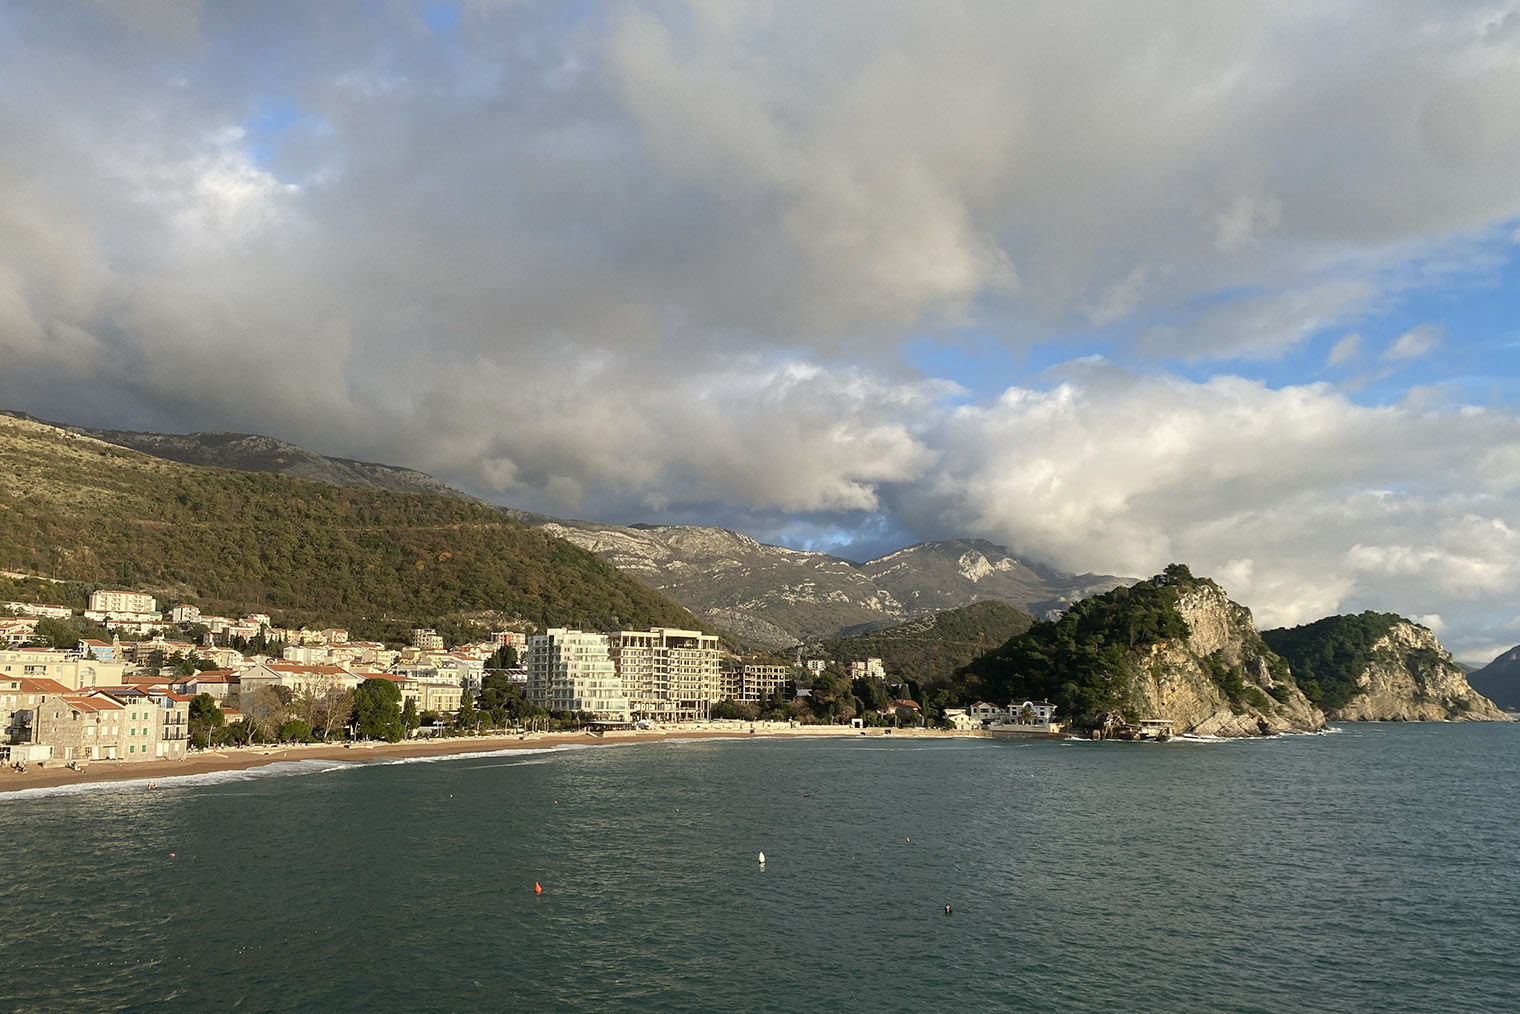 Море и горы — главное, что восхищает приехавших в Черногорию